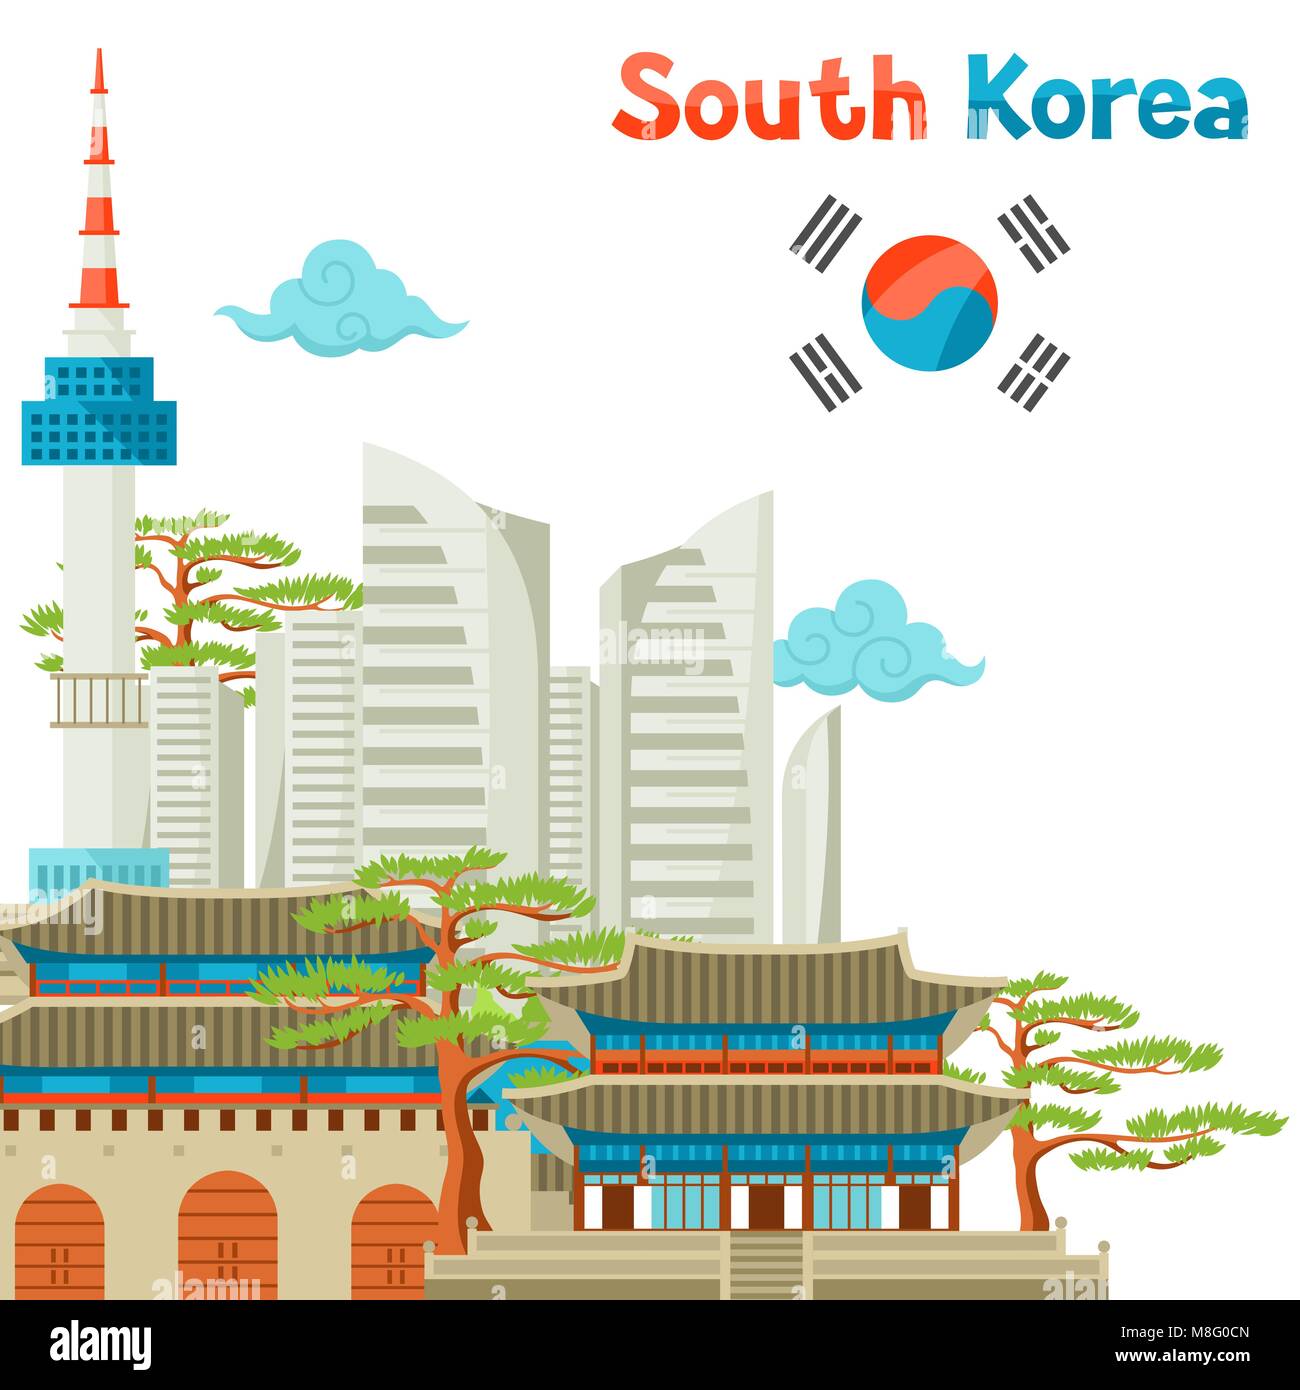 Biến mọi thiết bị của bạn trở nên độc đáo với những hình nền kiến trúc lịch sử và hiện đại Hàn Quốc. Tận hưởng cảm giác như đang thực sự ngồi trên tòa nhà cao ốc mà bạn hâm mộ nhất, hay đứng trước những kiến trúc cổ kính đầy bí ẩn, những hình nền này sẽ khiến bạn thấy được vẻ đẹp và sâu sắc của đất nước Hàn Quốc. 